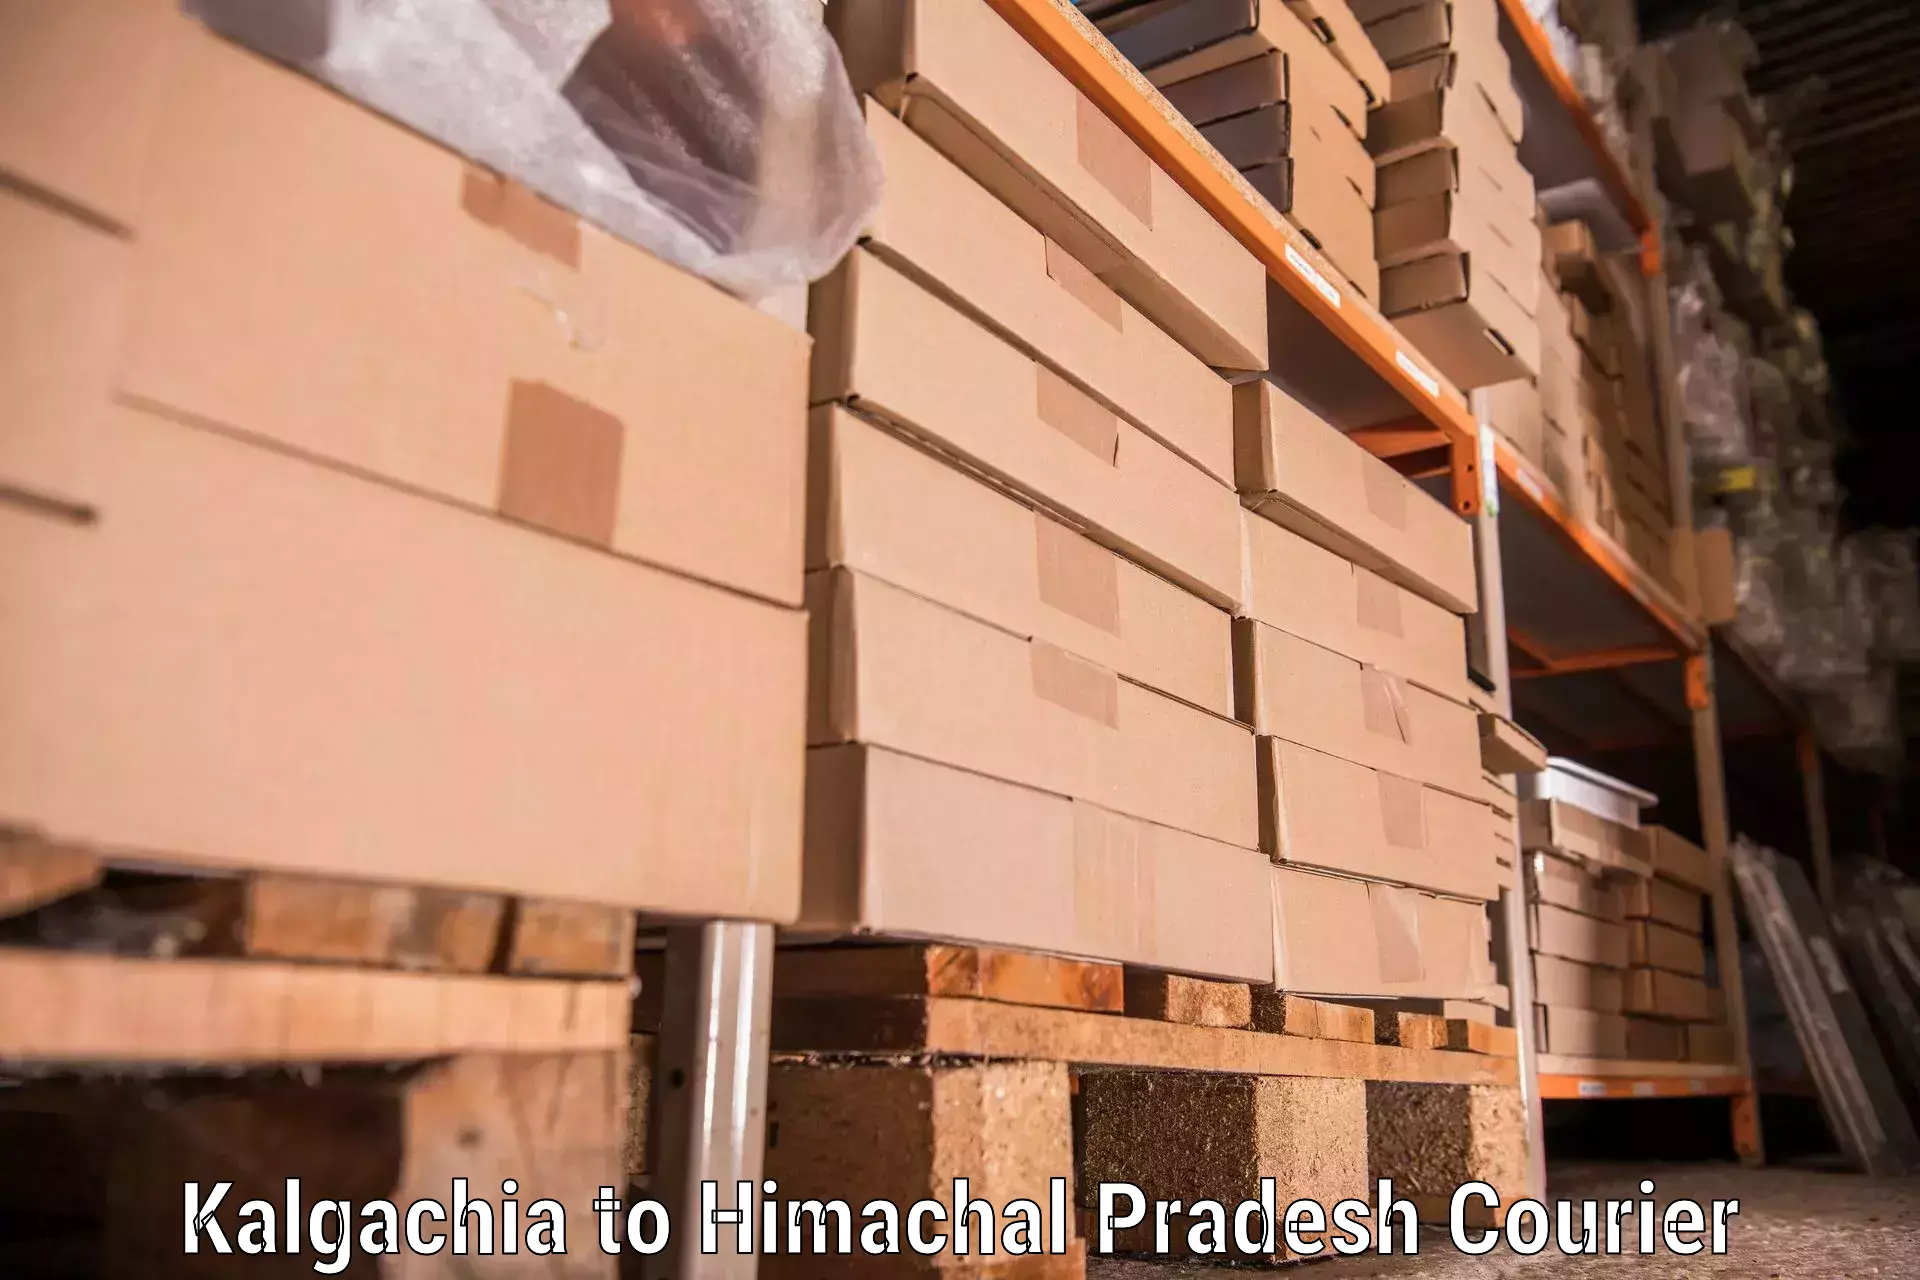 Reliable moving assistance Kalgachia to Chintpurni